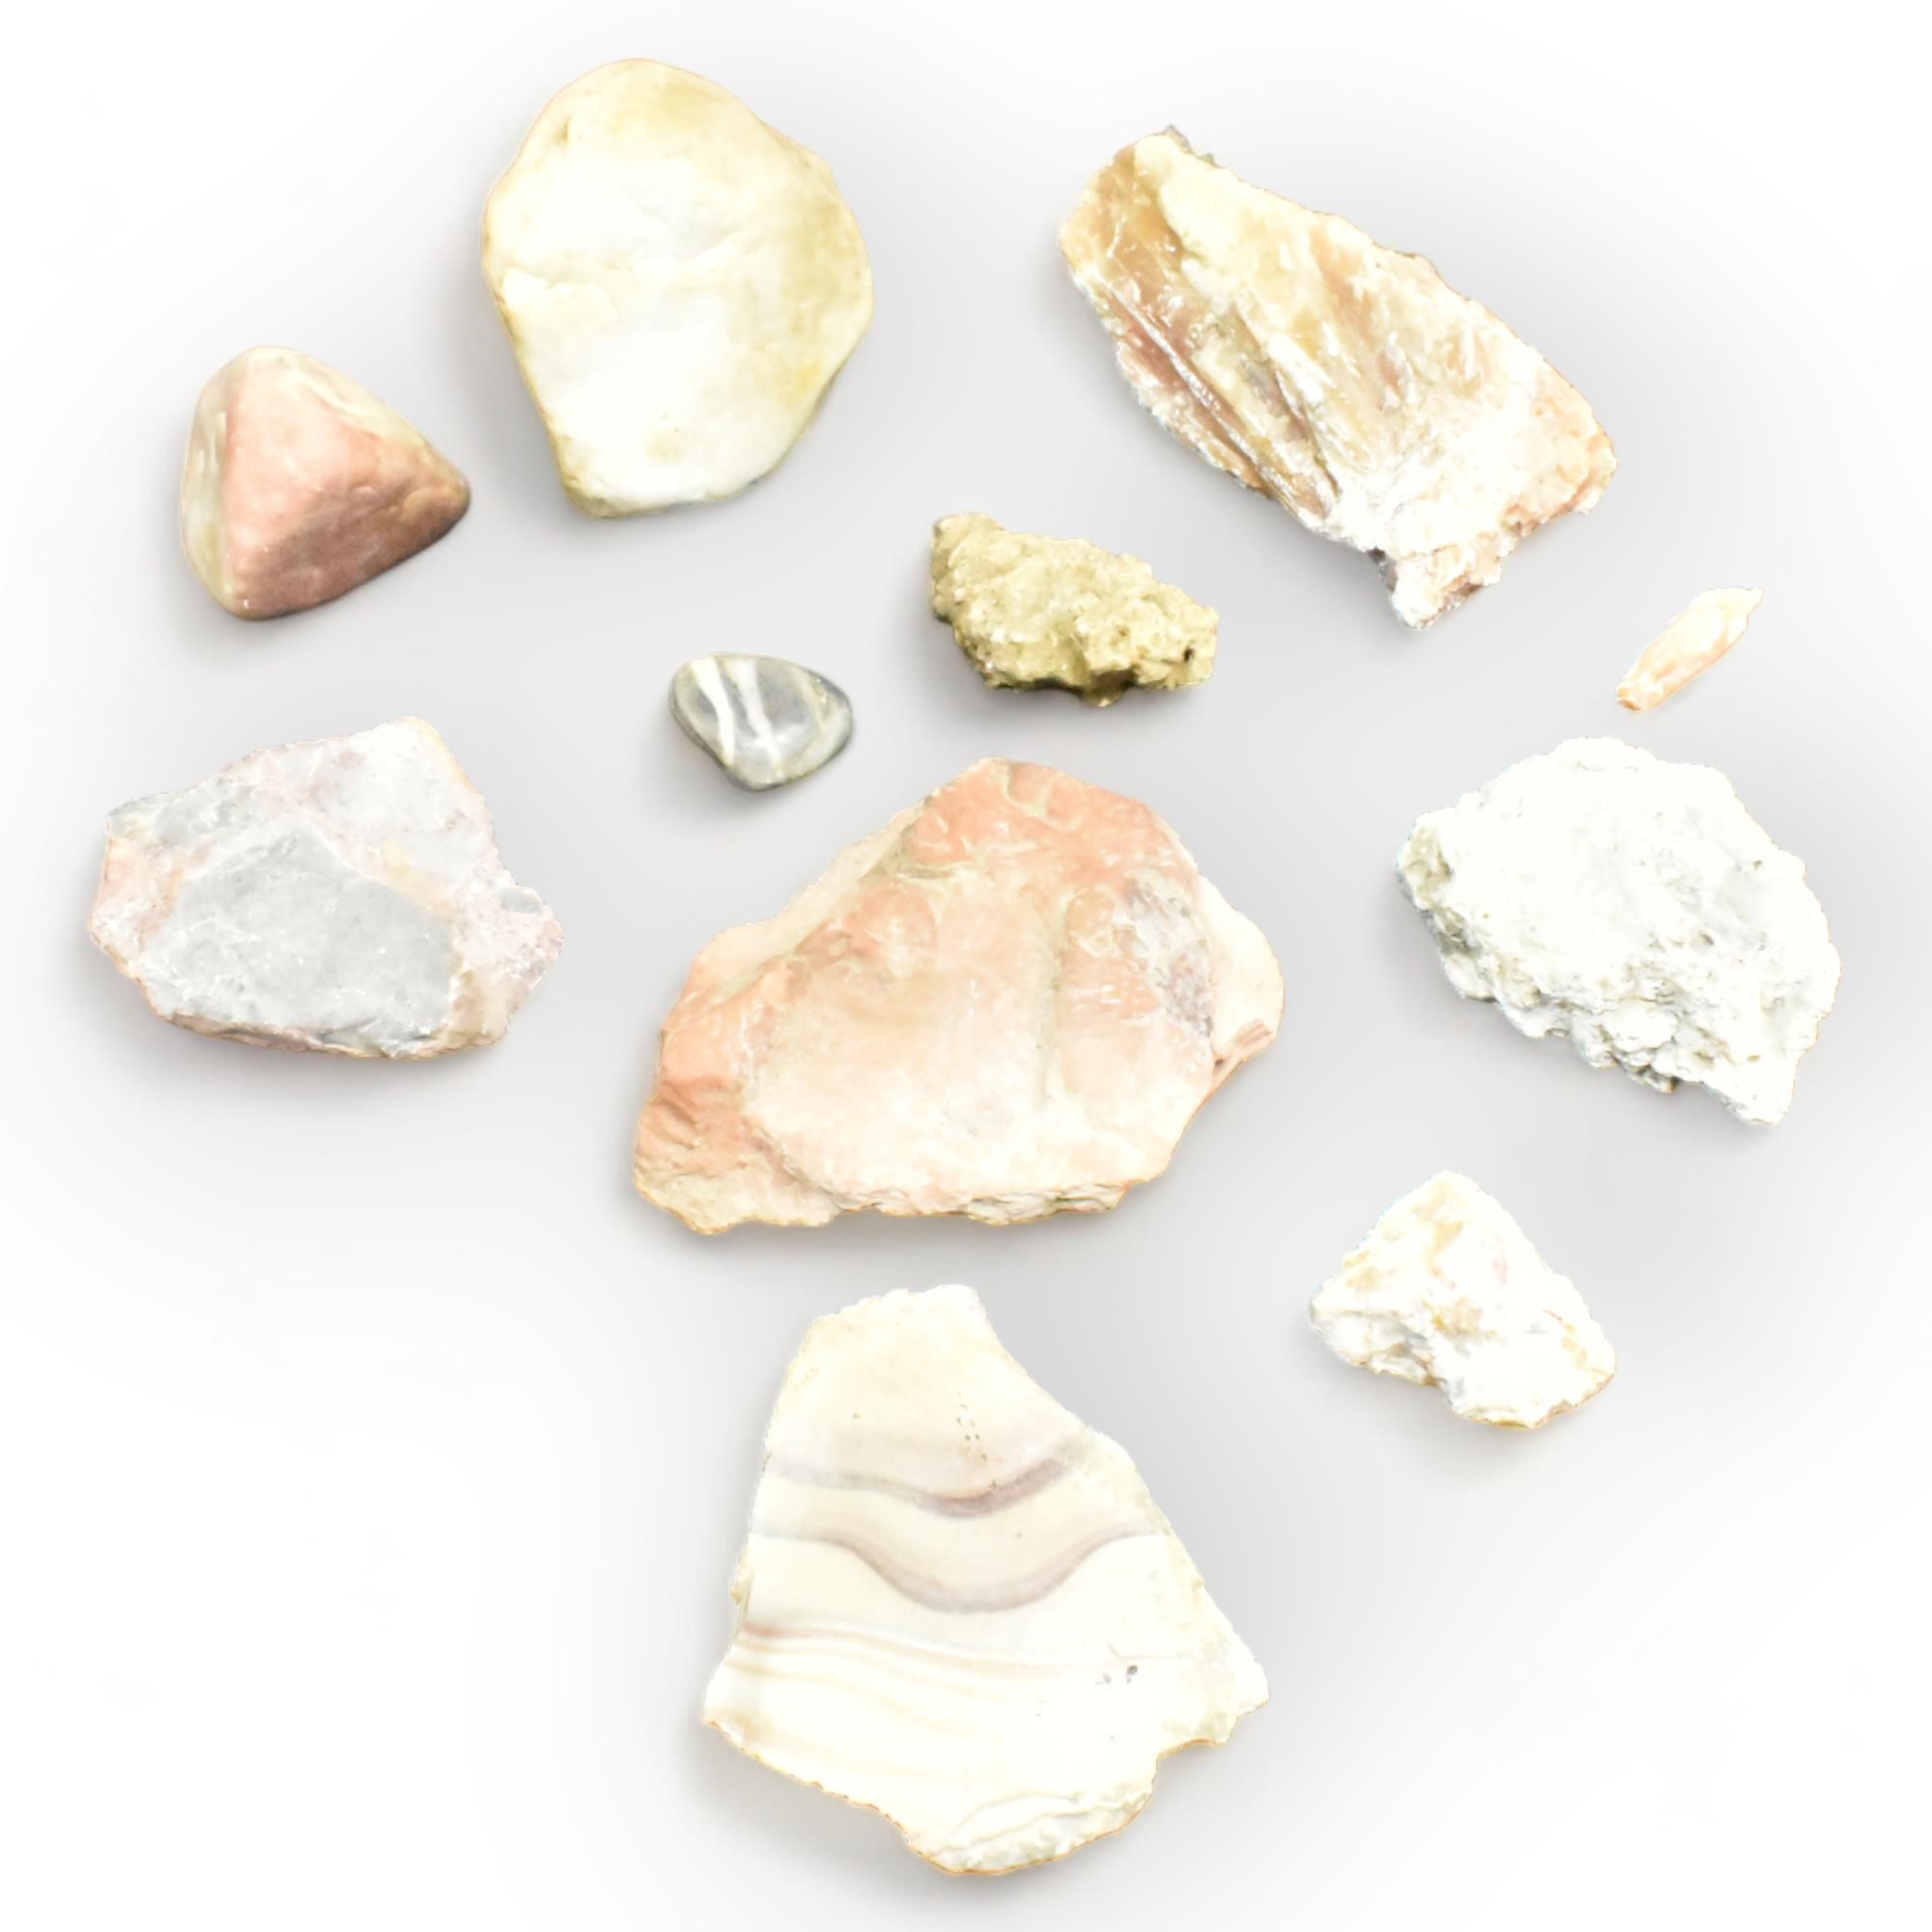 Minerals - Stones - Rocks - Feldspar